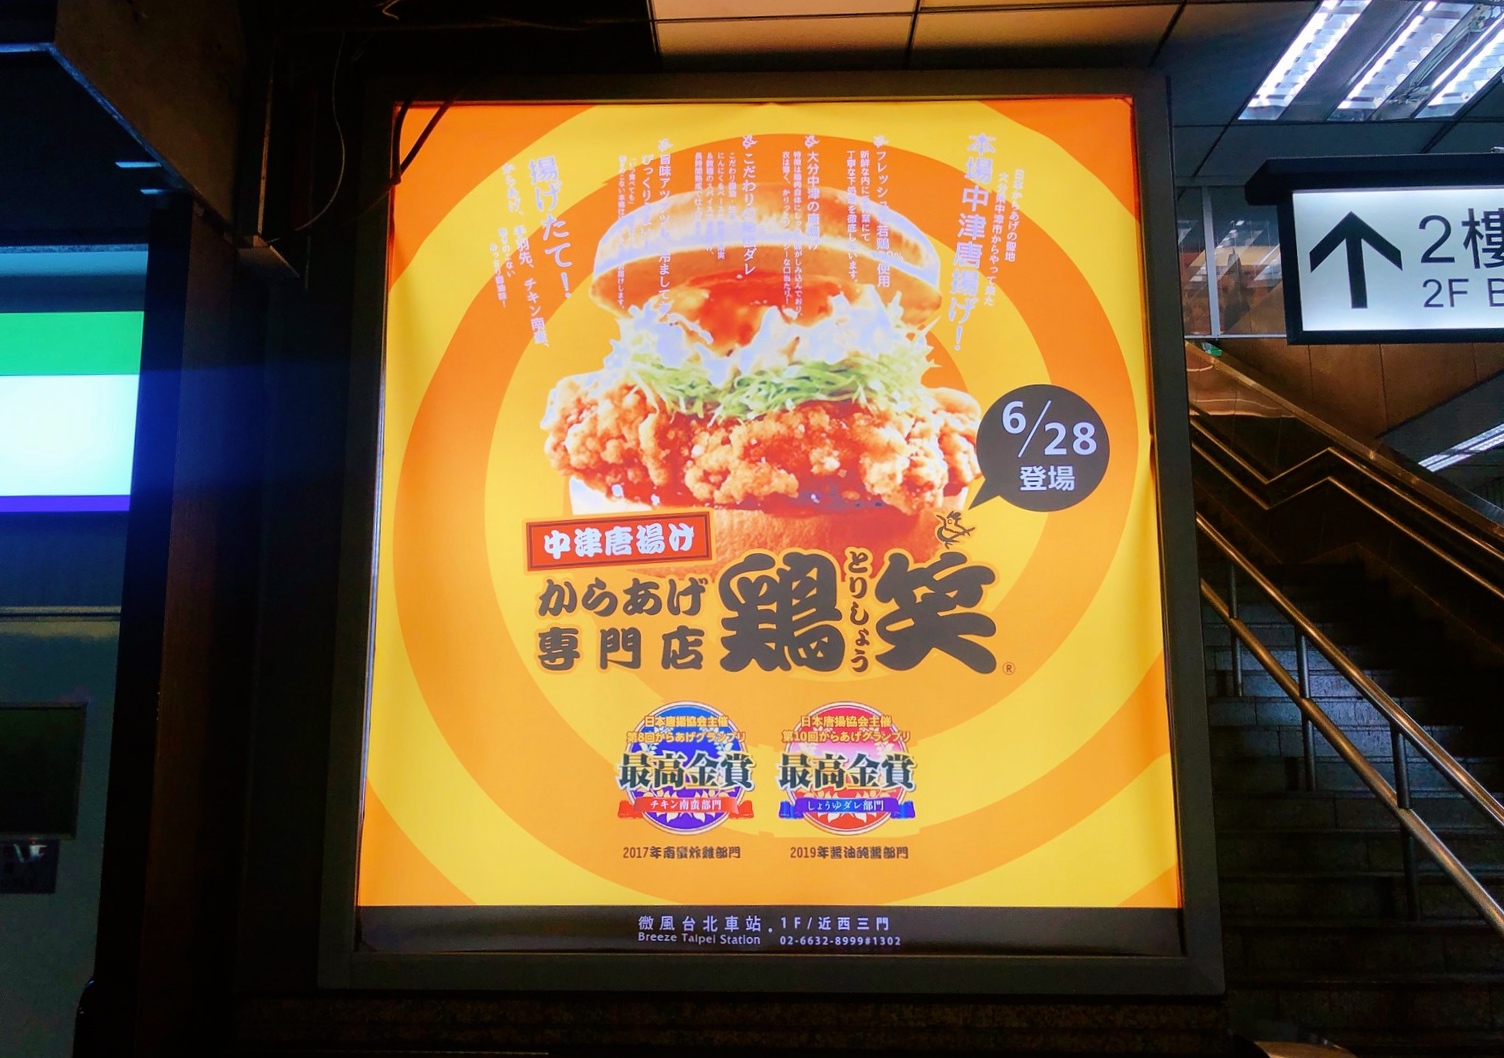 【食 Torisho 雞笑】日本連續4年第一名！日本全國炸物最高殊榮金賞獎。北車限定版唐揚雞買了就走